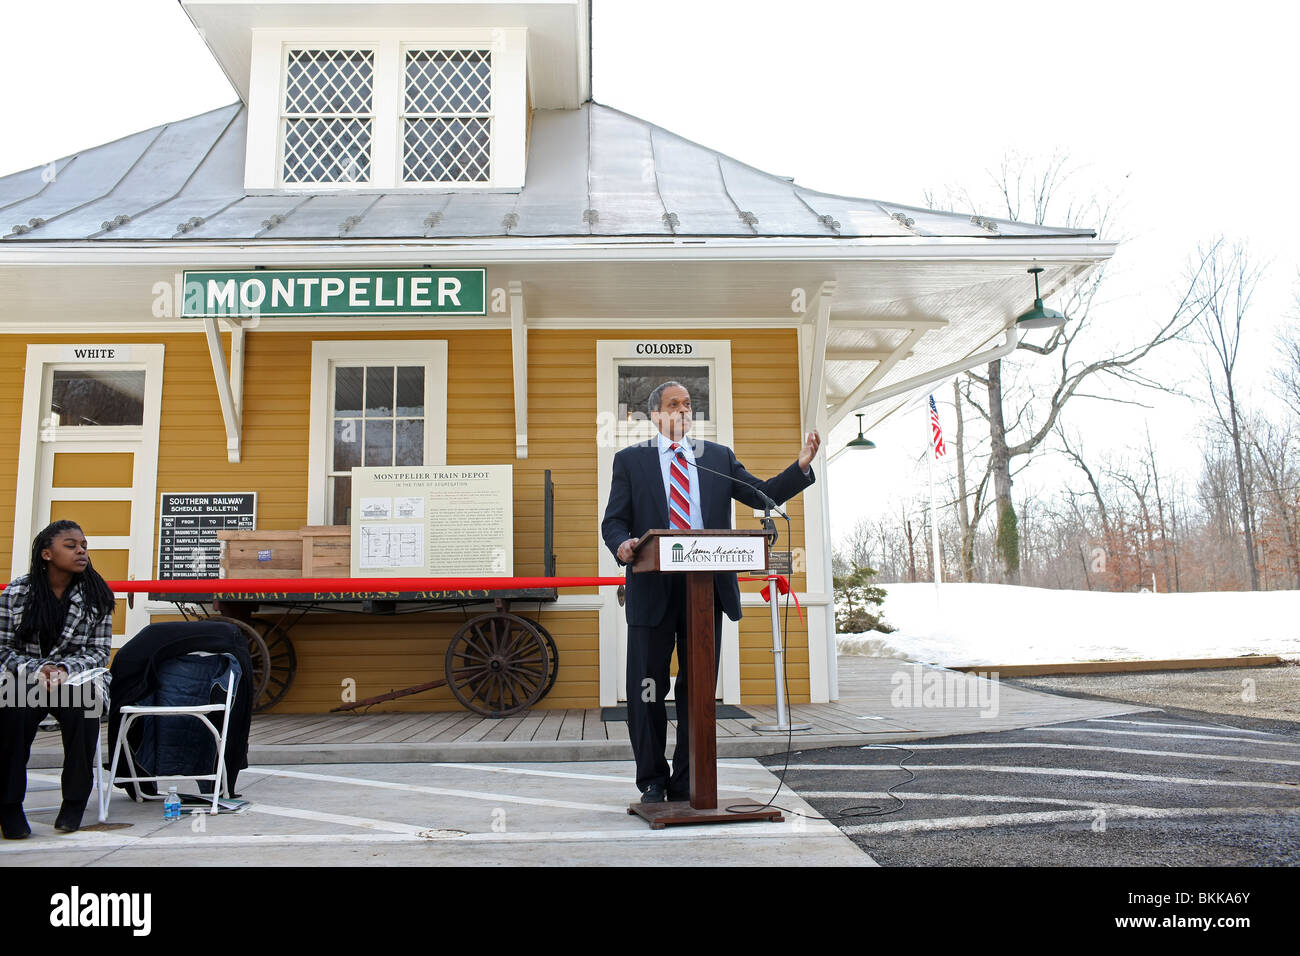 Un invité le président prononce un discours à l'entrée de Montpelier, Virginie. Banque D'Images